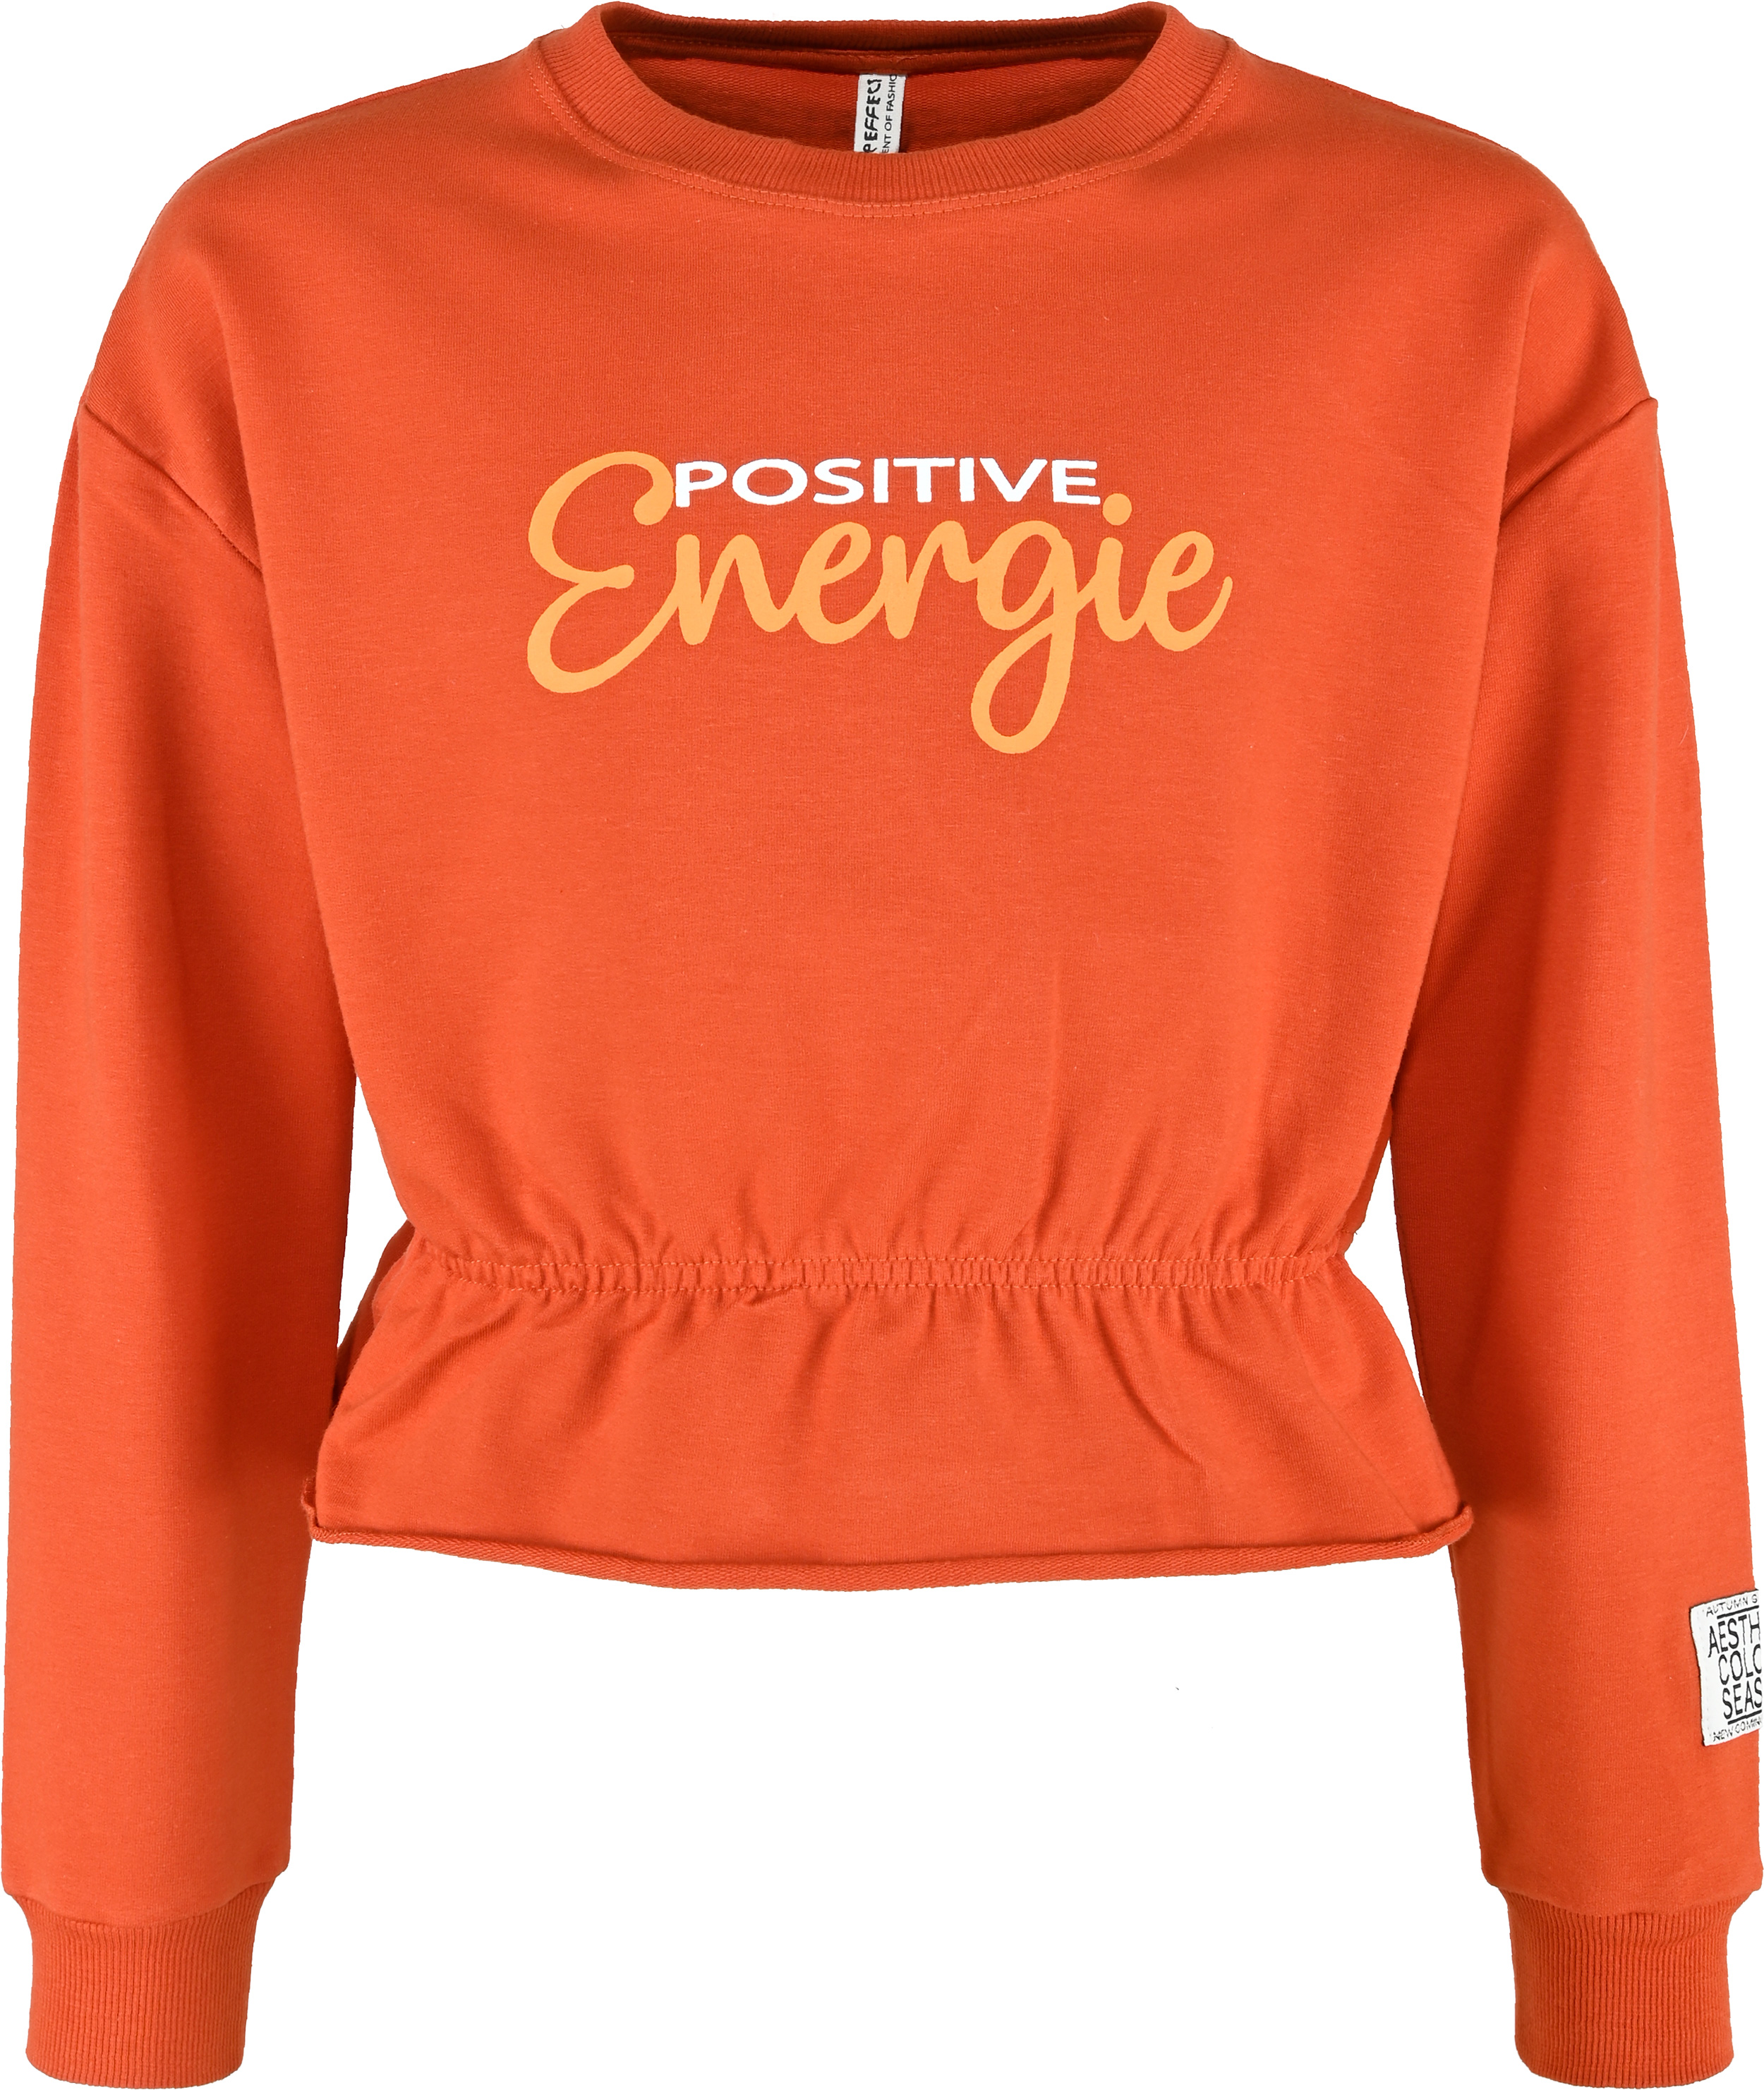 5715-Girls Sweatshirt -Positive Energy